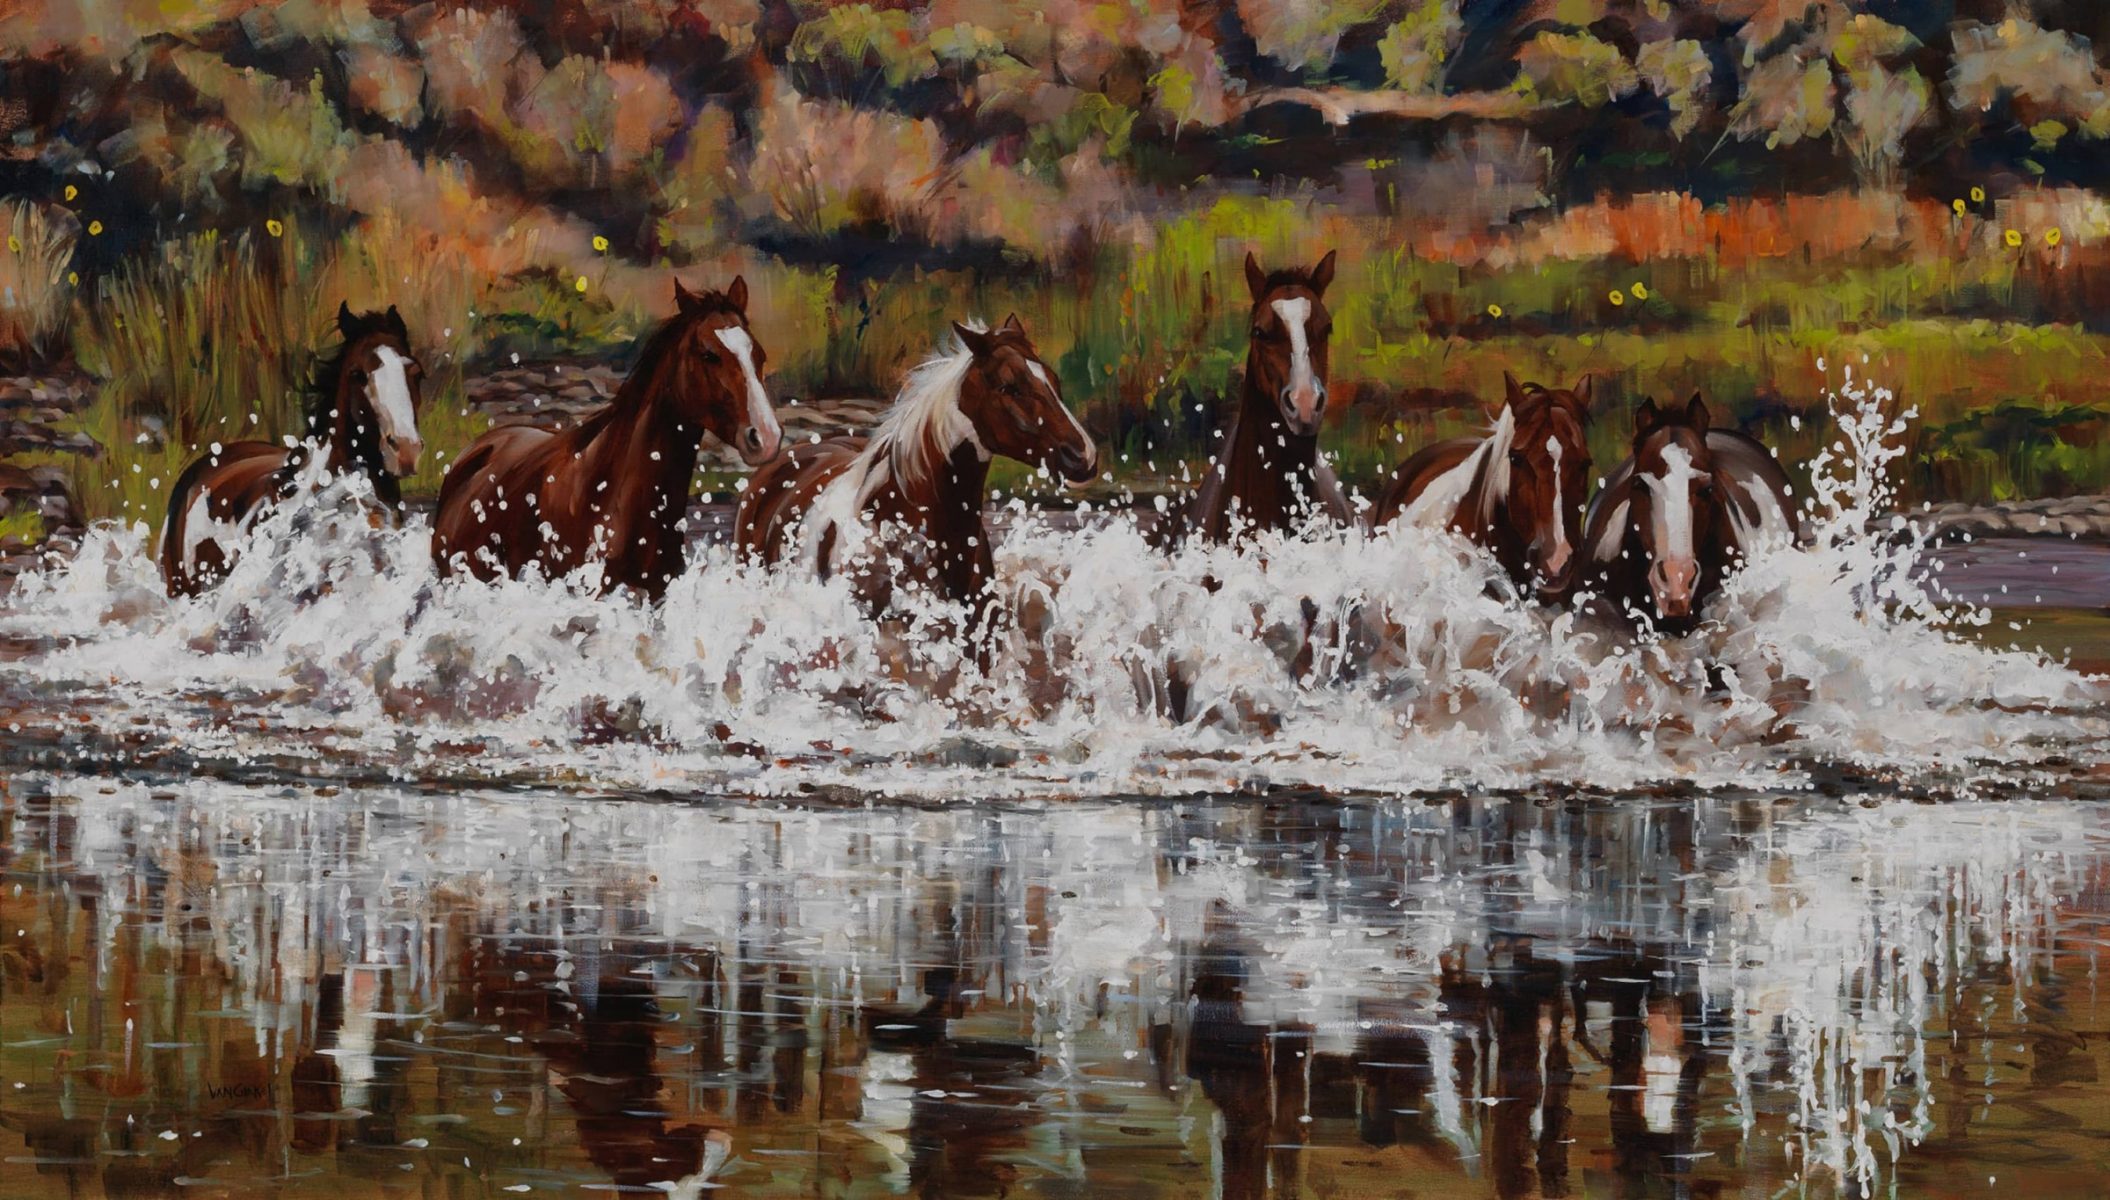 Explosive Horsepower painting by Paul Van Ginkel